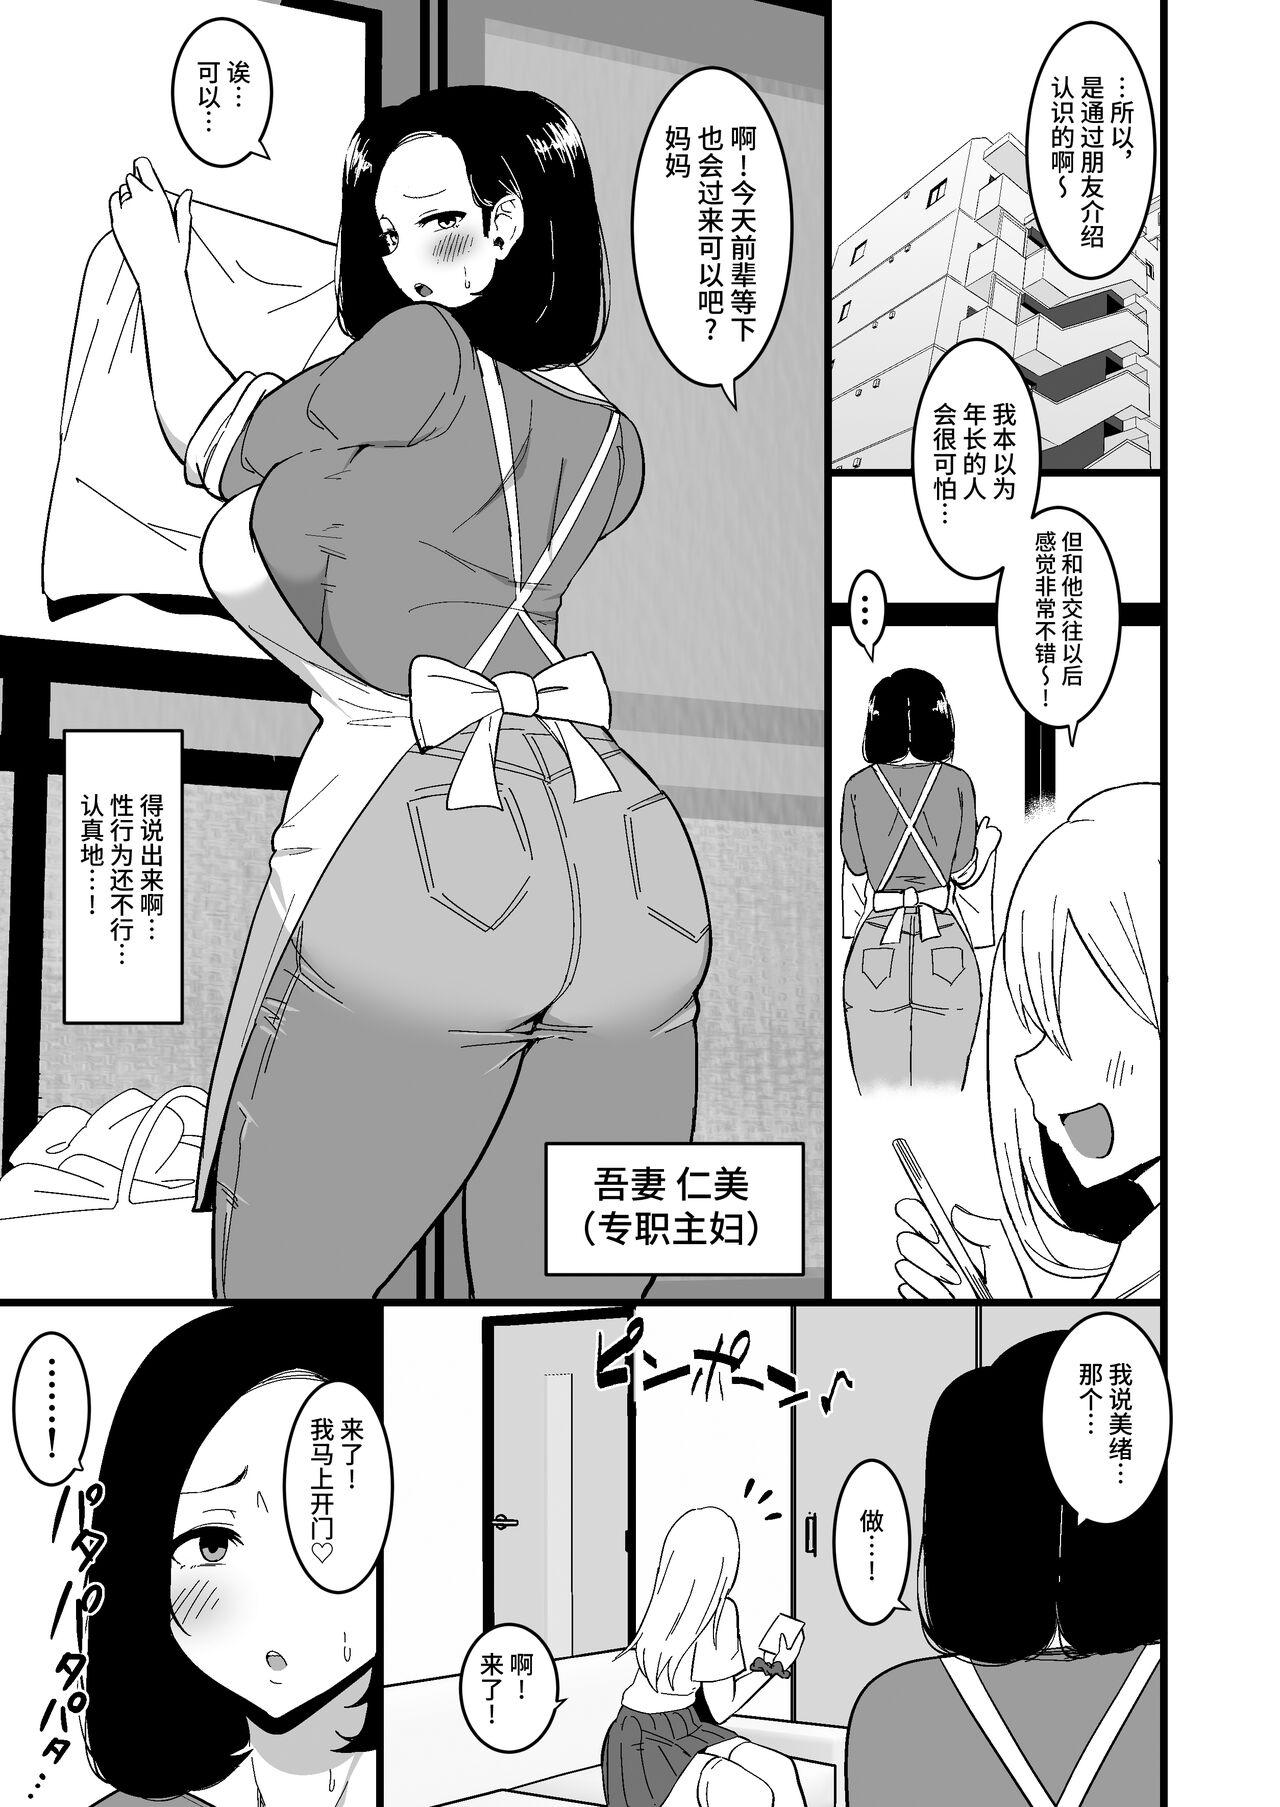 Spooning Musume no Kareshi ni Ochiru Okaa-san. 2 - Original Role Play - Page 4